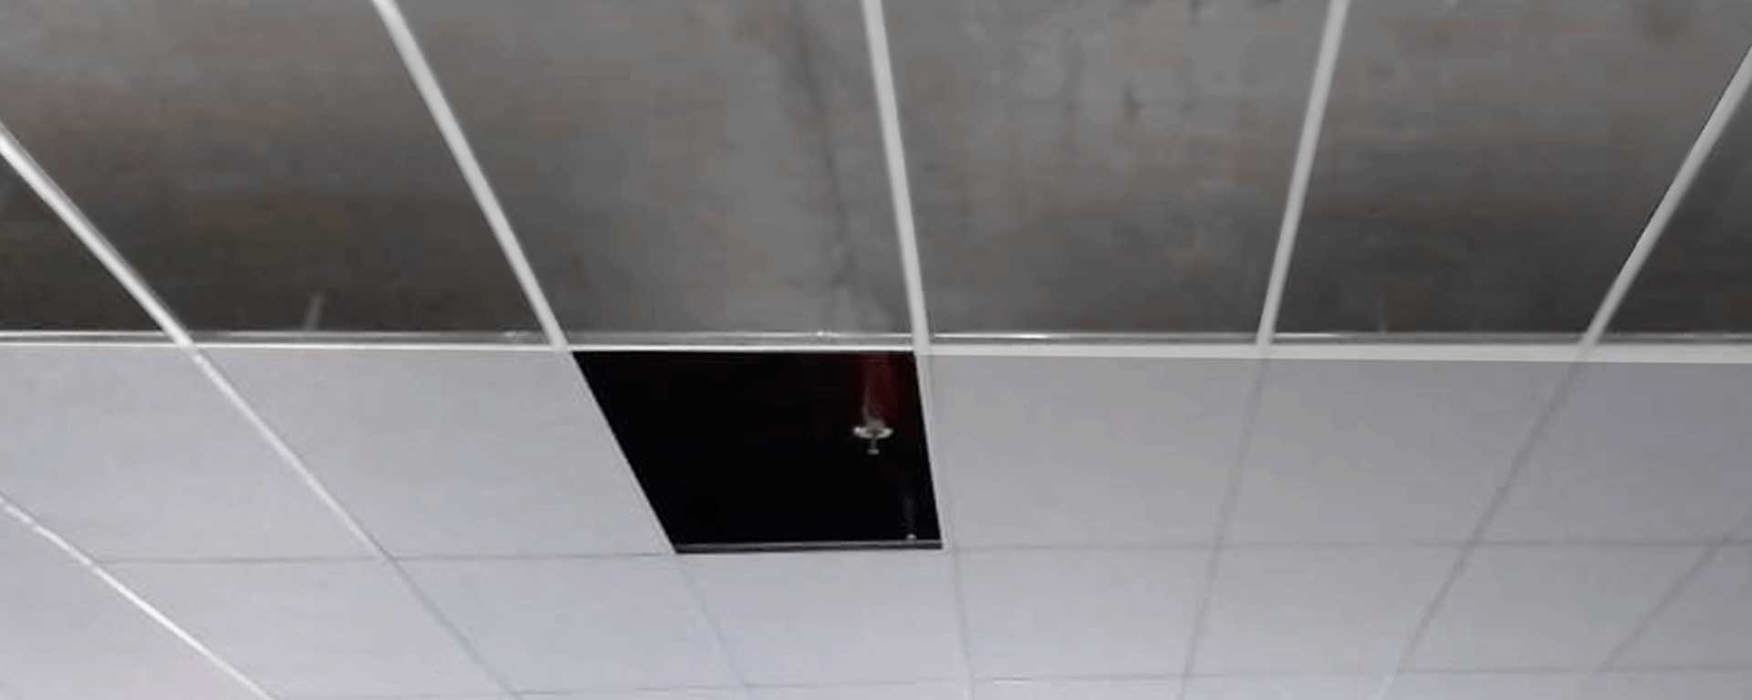 Forro Drywall com chapas removíveis